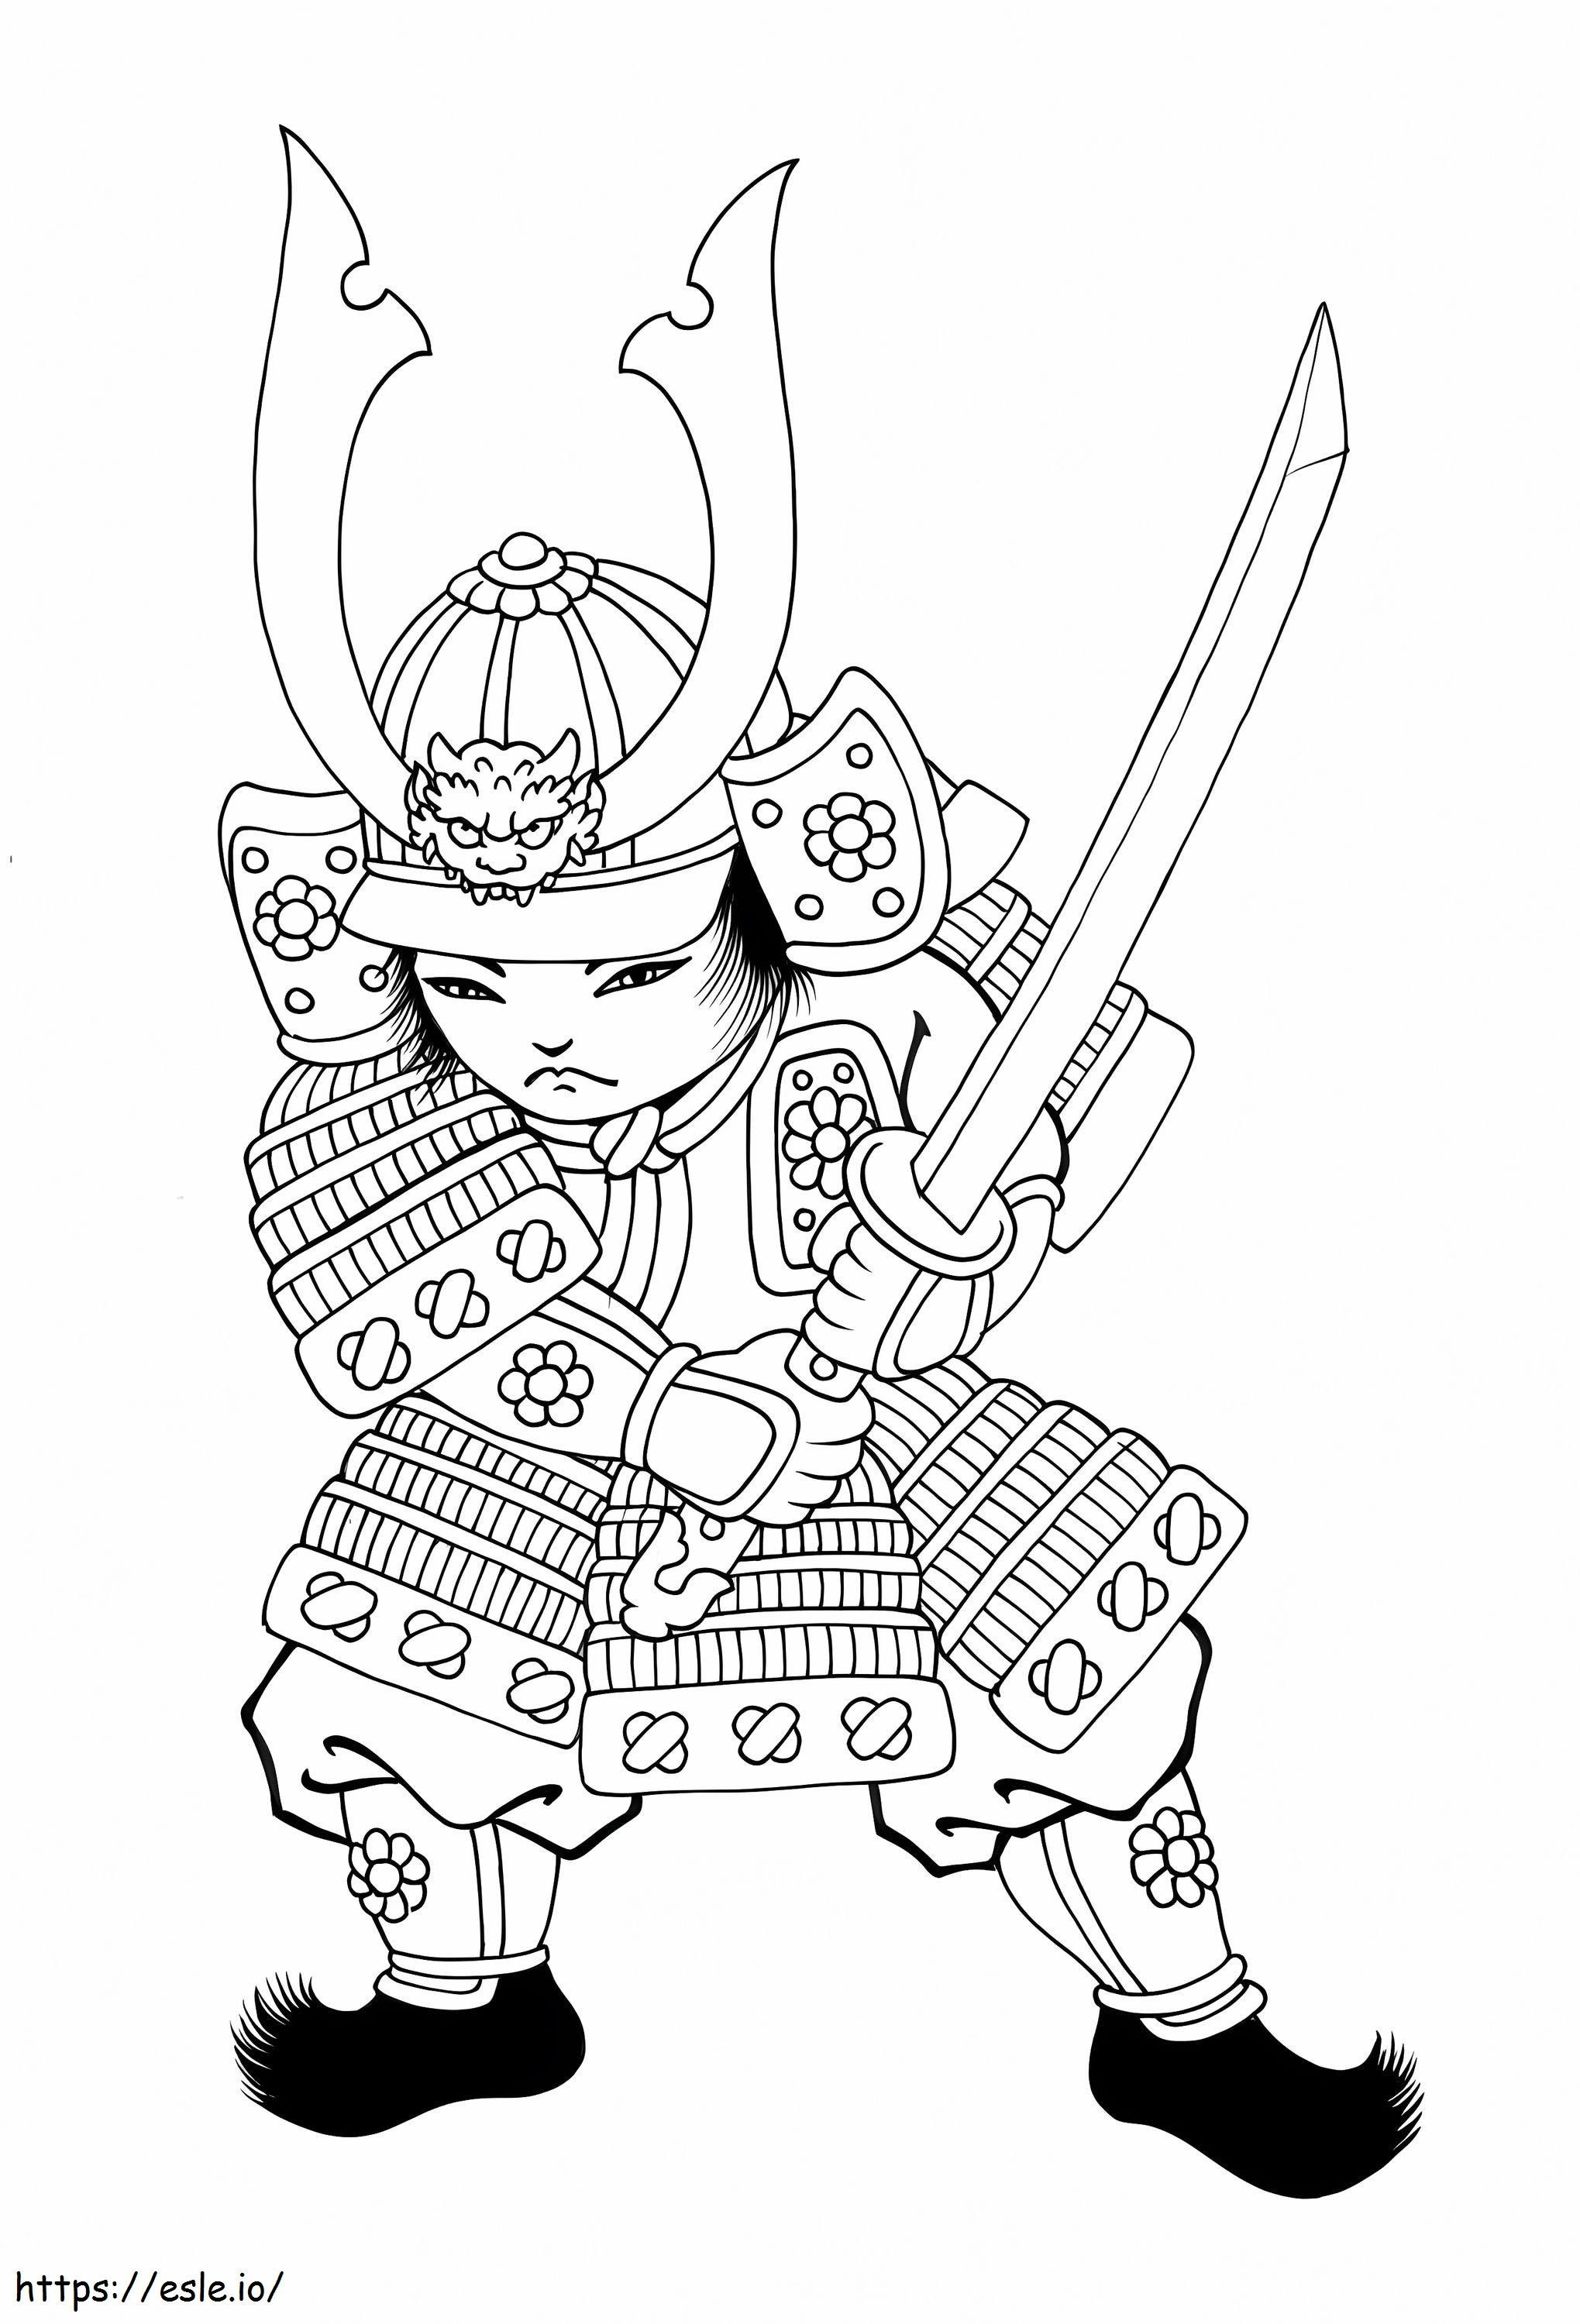 Chibi Samurai cu sabie de colorat